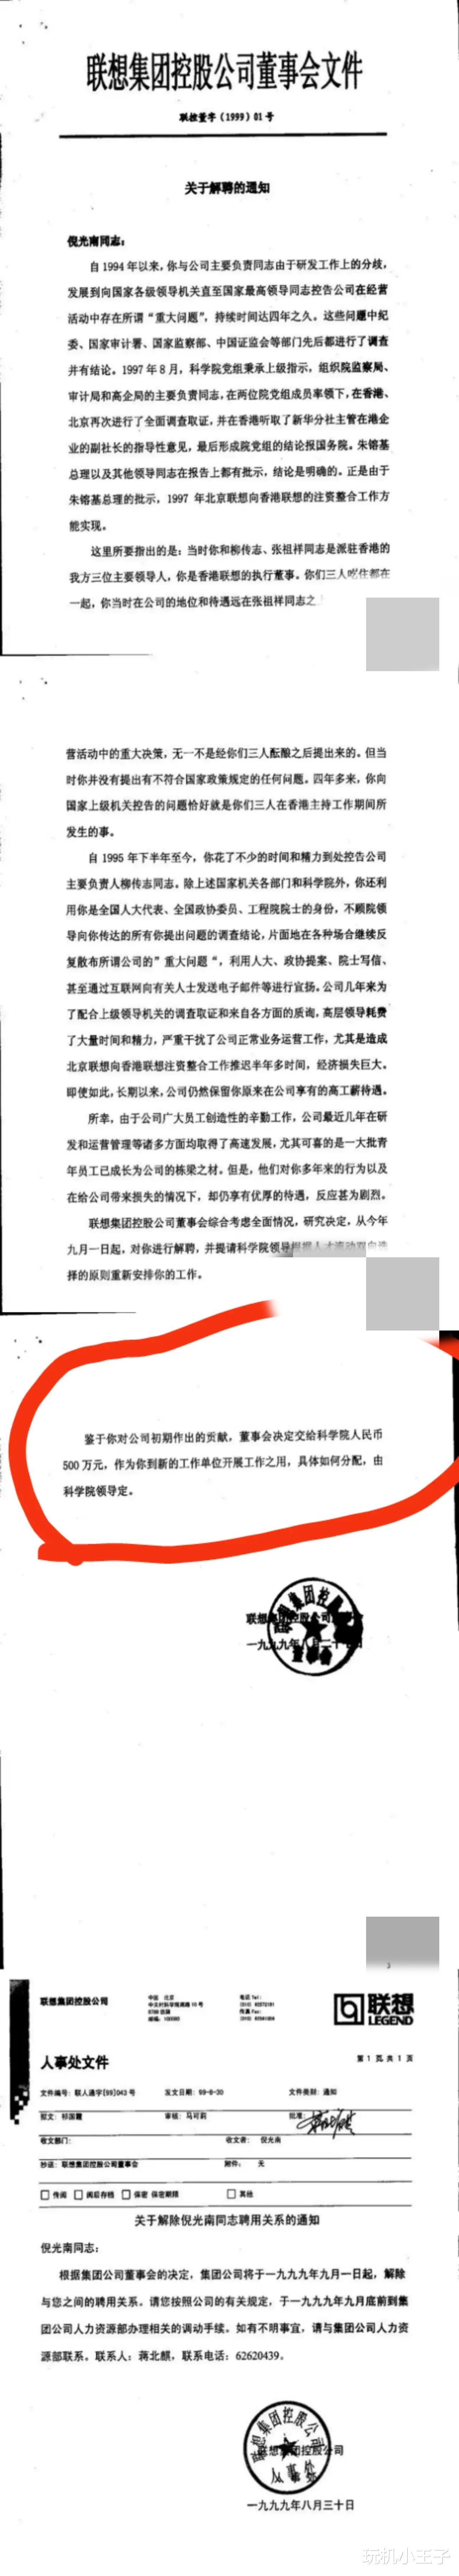 倪光南|张捷：倪光南被解雇会有一大群资本给他投资的，柳当然要堵死